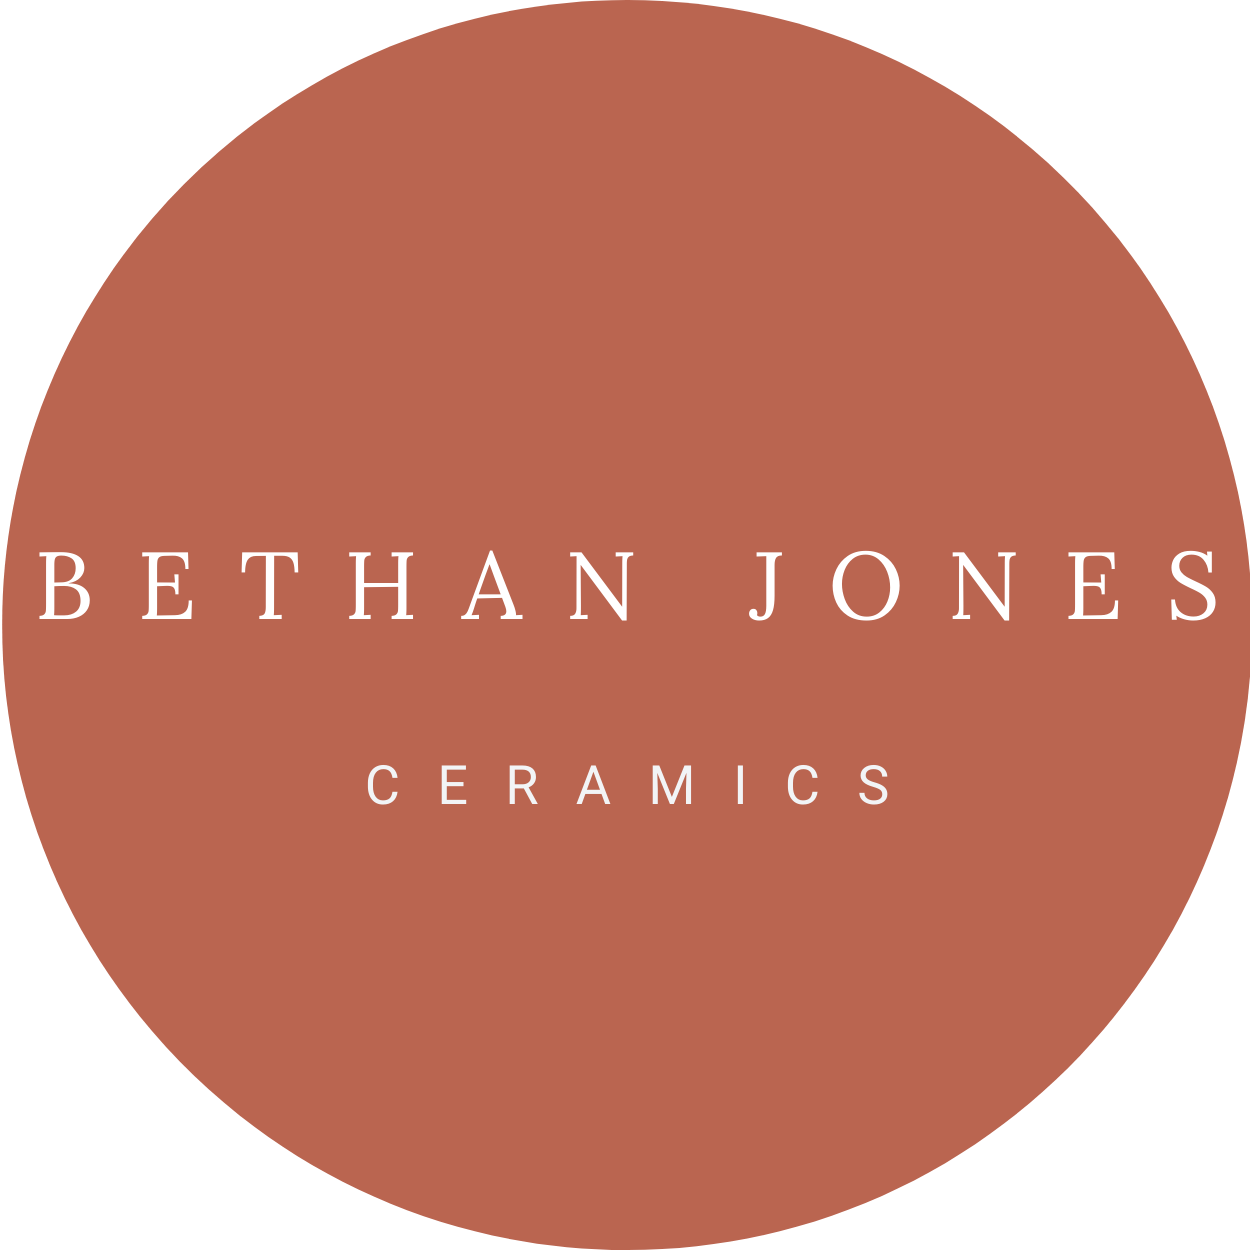 Bethan Jones Ceramics